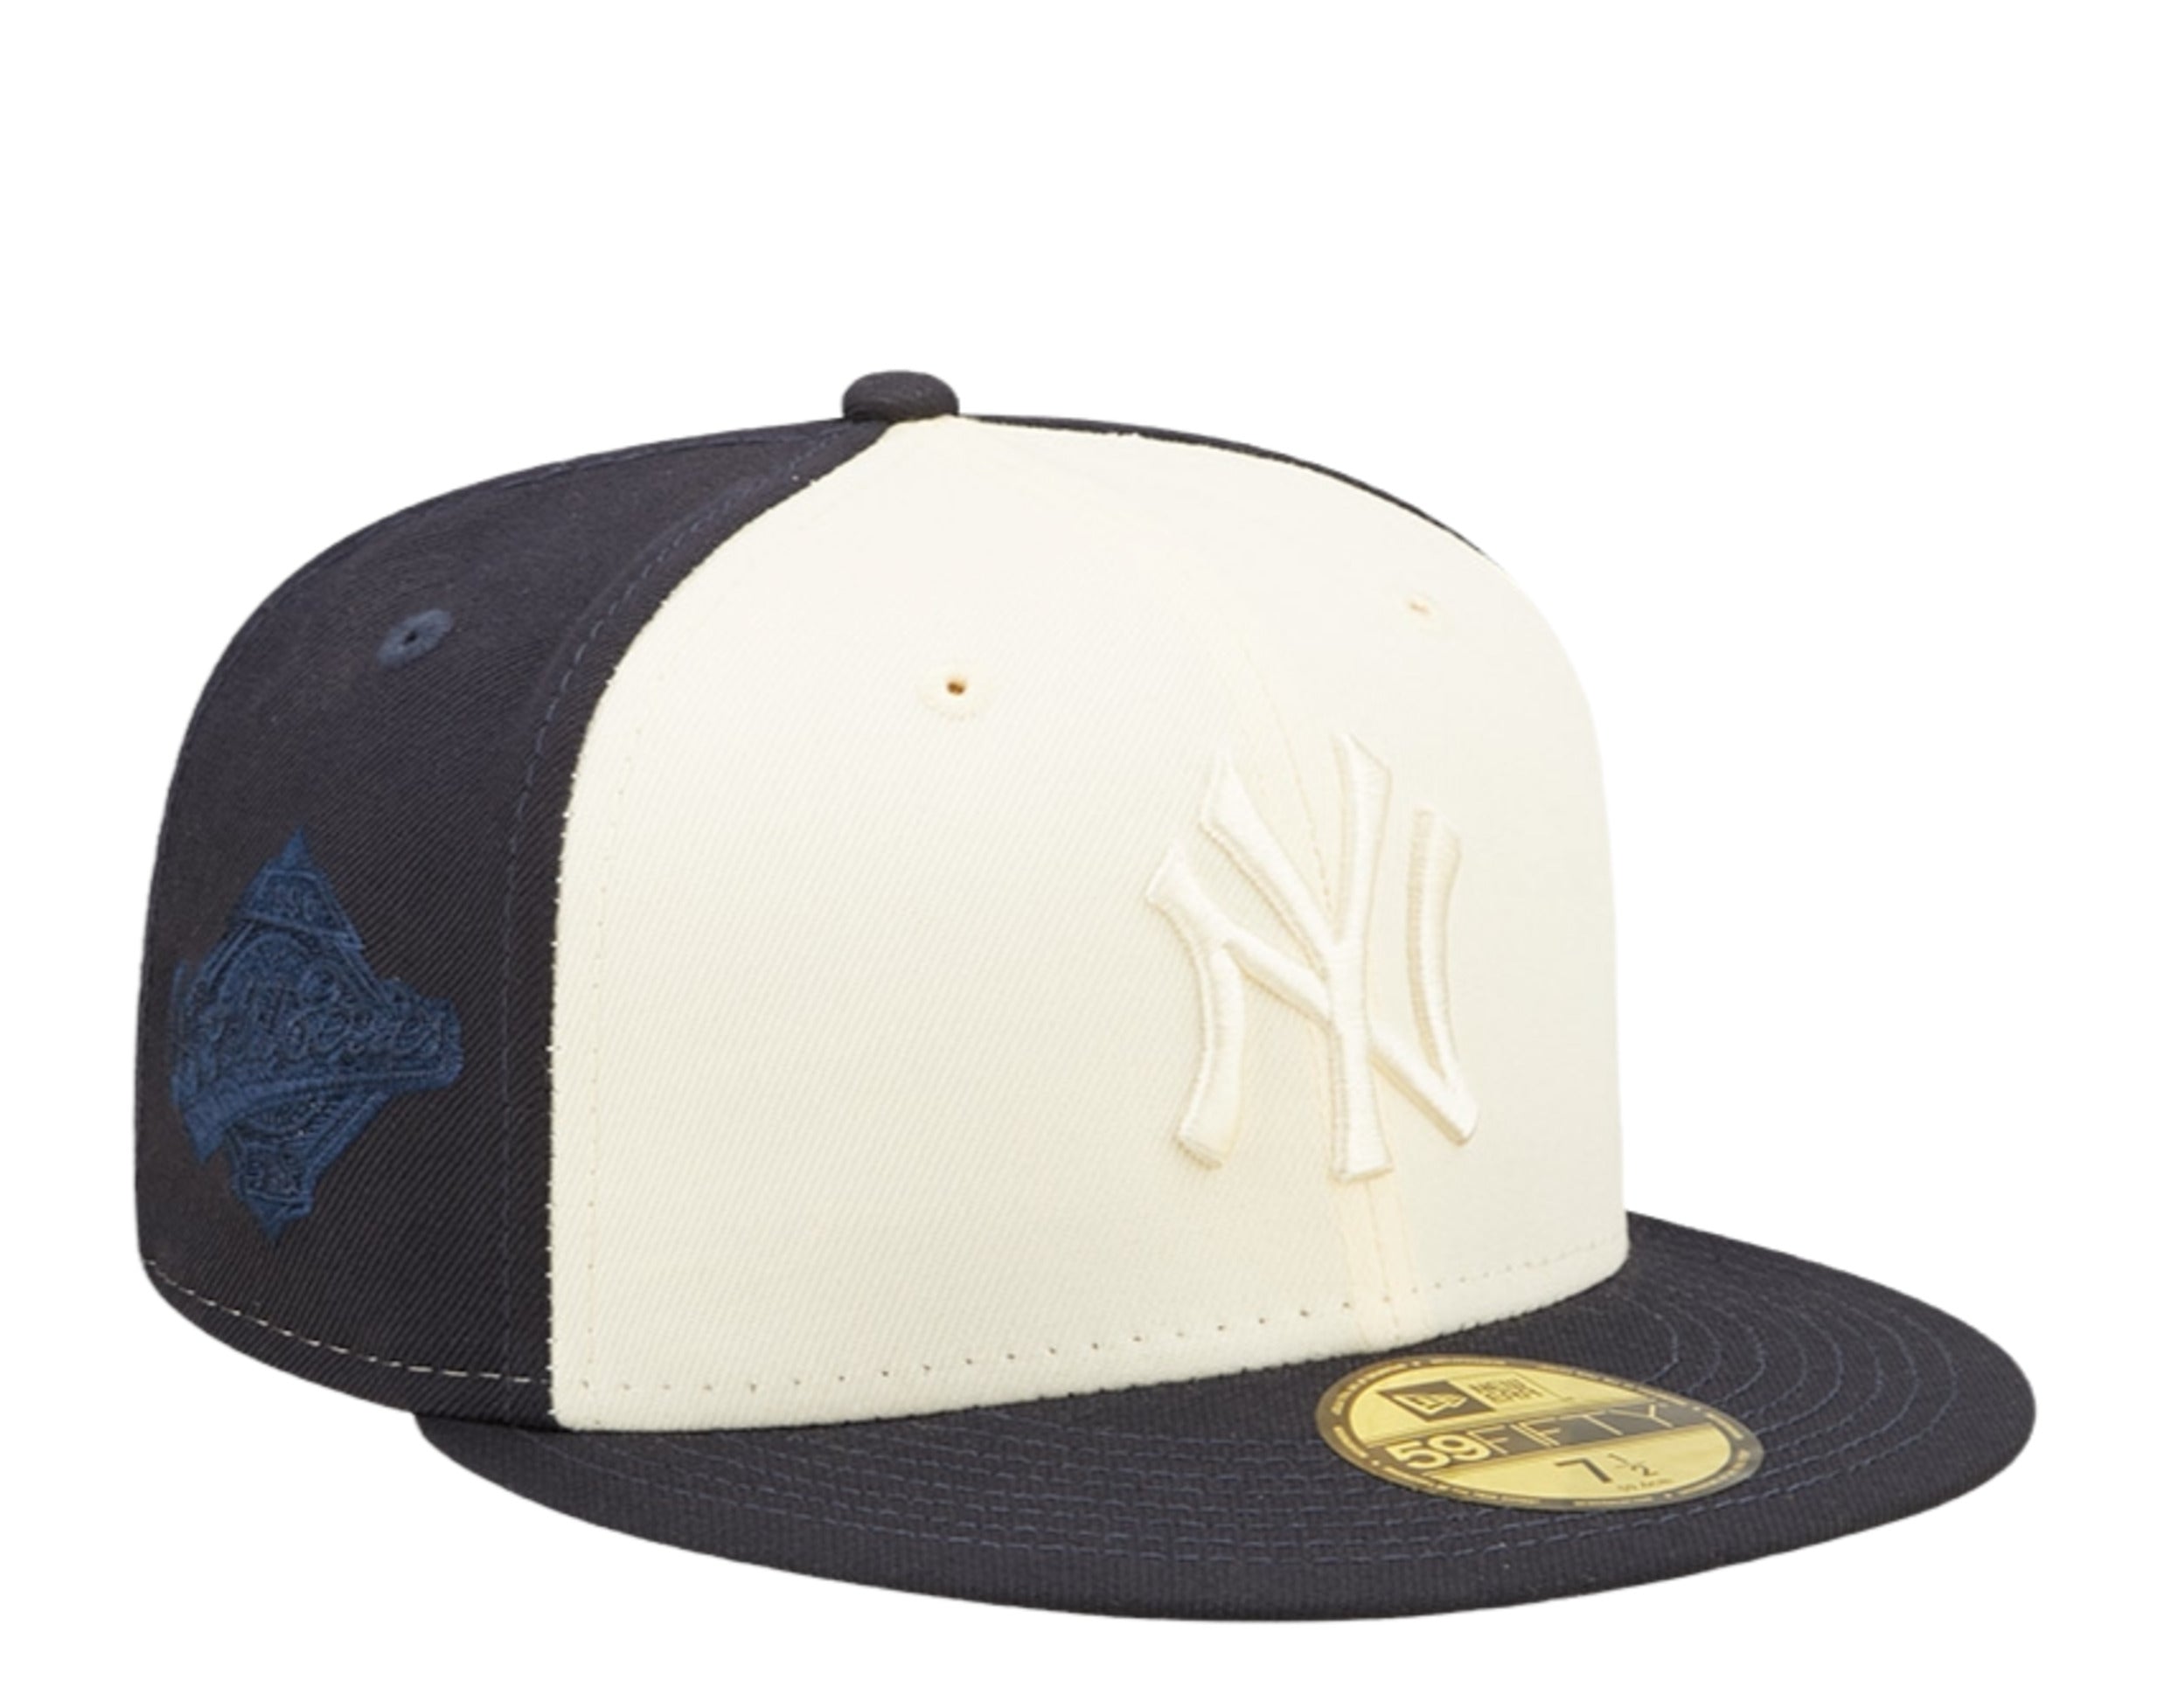 New Era MLB Trucker 2 NY Yankees Caps, Black